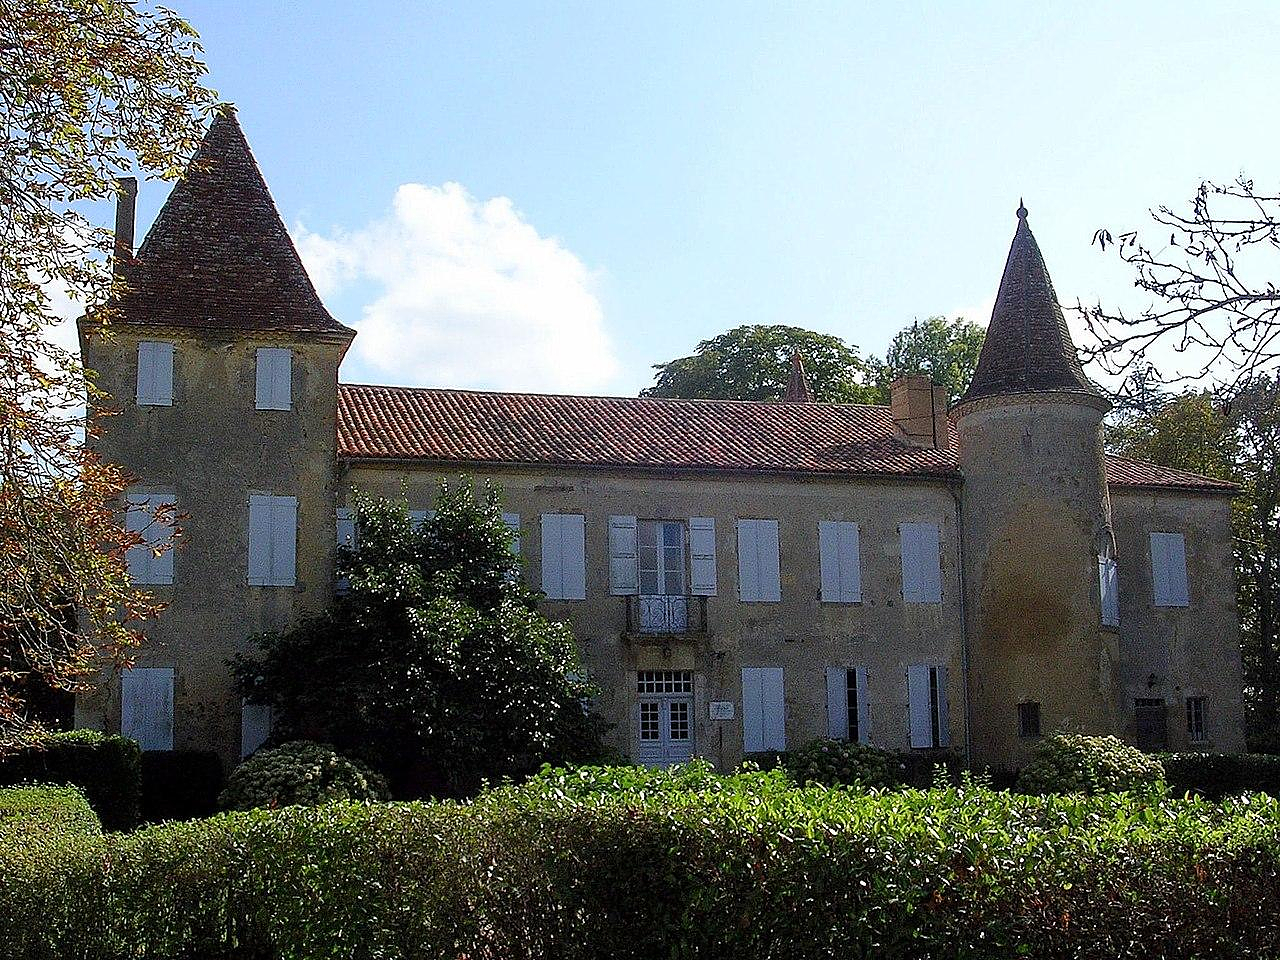 Château de d’Artagnan: communities surrender